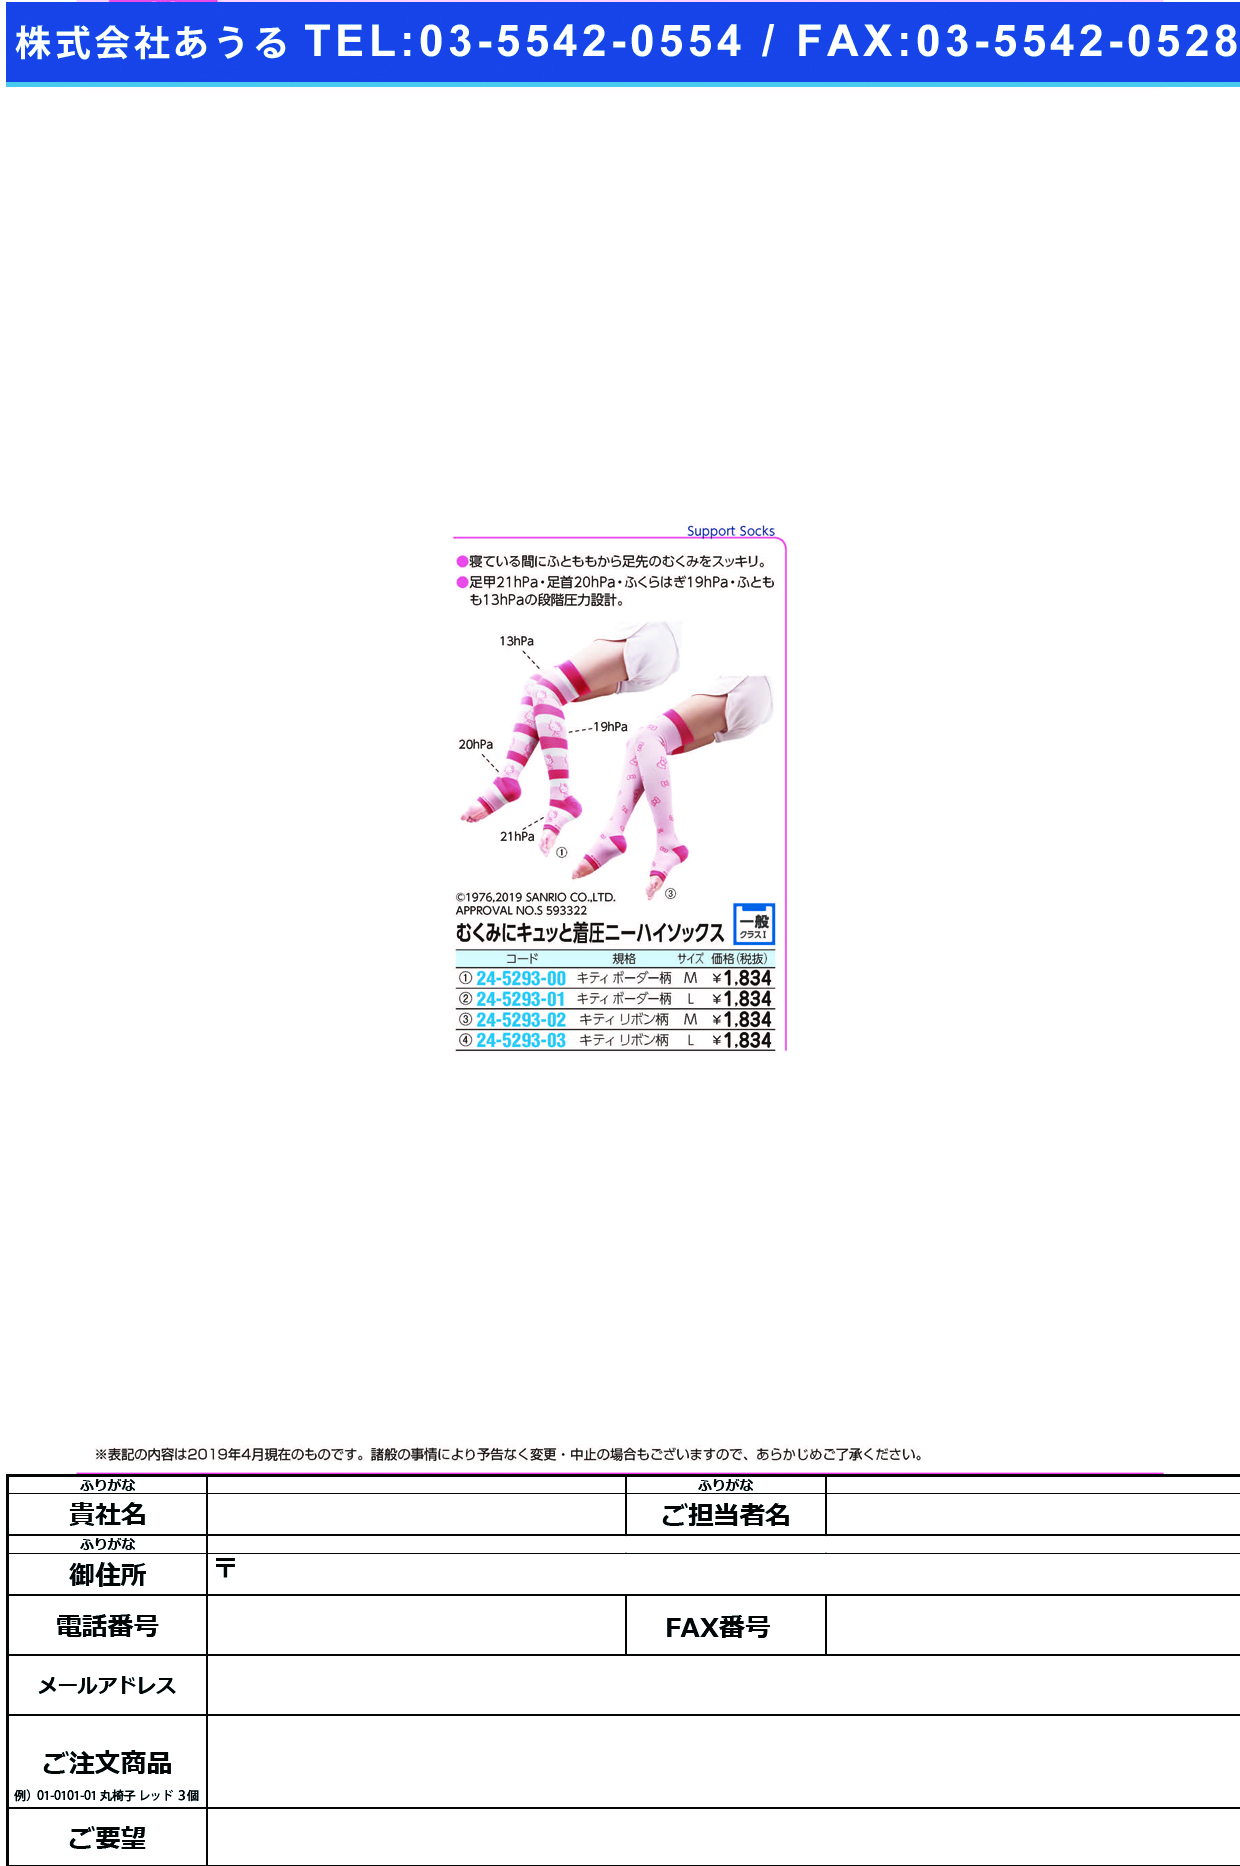 (24-5293-00)むくみにキュッと着圧ハイソックス M(ｷﾃｨﾎﾞｰﾀﾞｰ) ﾑｸﾐﾆｷｭｯﾄﾁｬｸｱﾂﾊｲｿｯｸｽ【1足単位】【2019年カタログ商品】